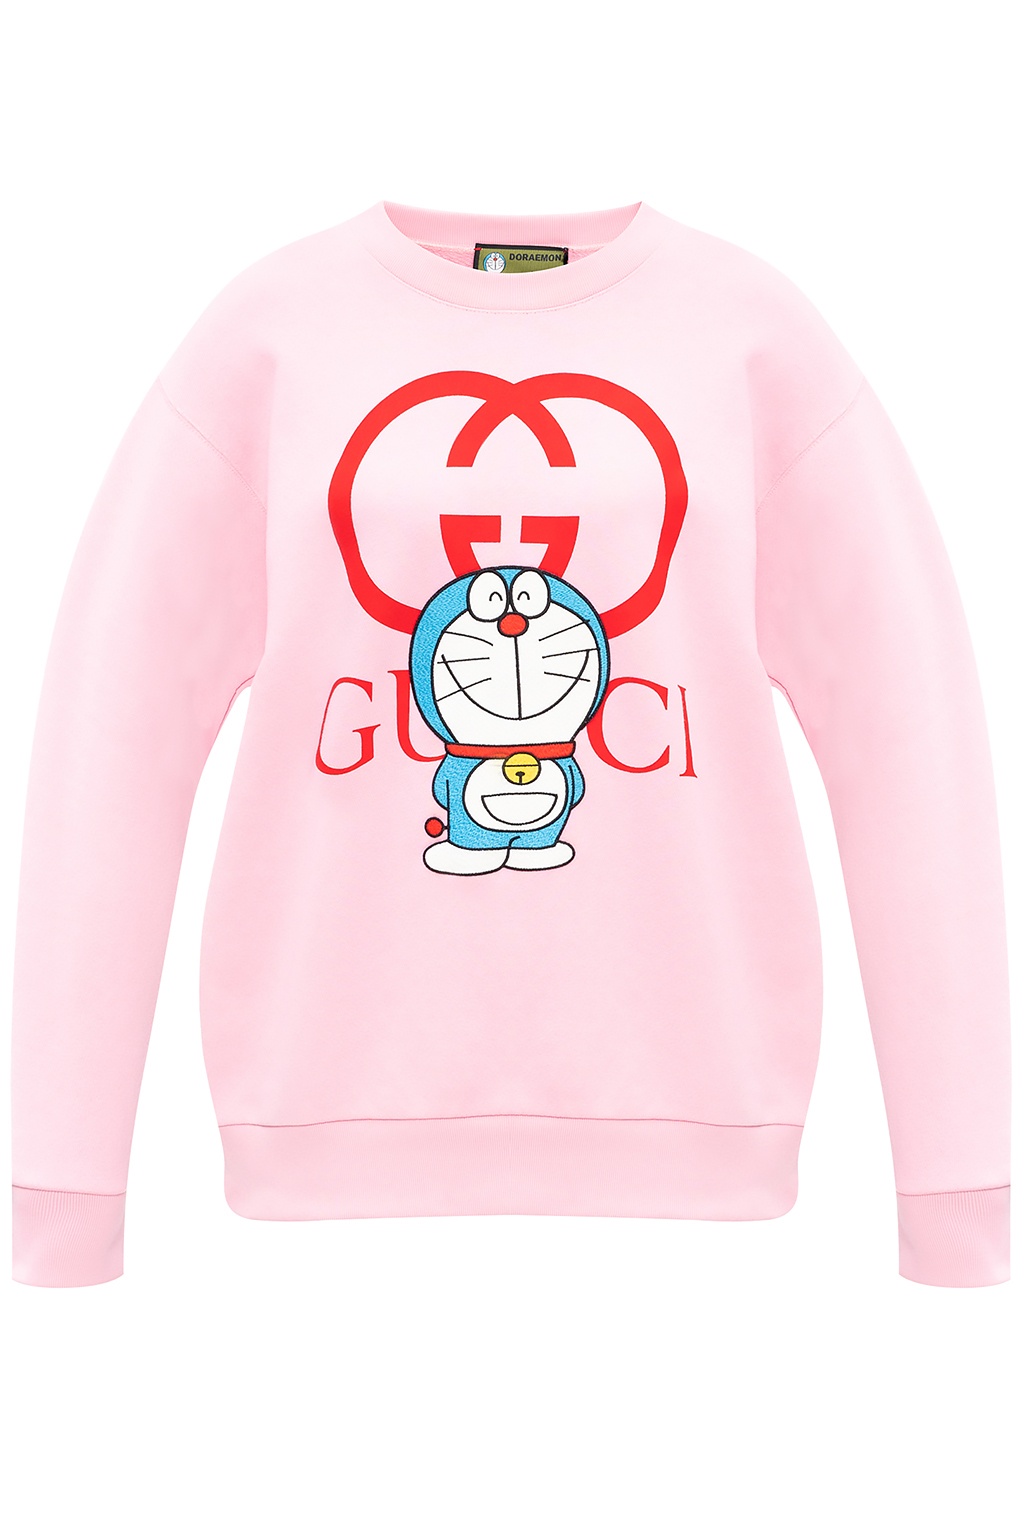 Doraemon gucci Gucci Celebrates